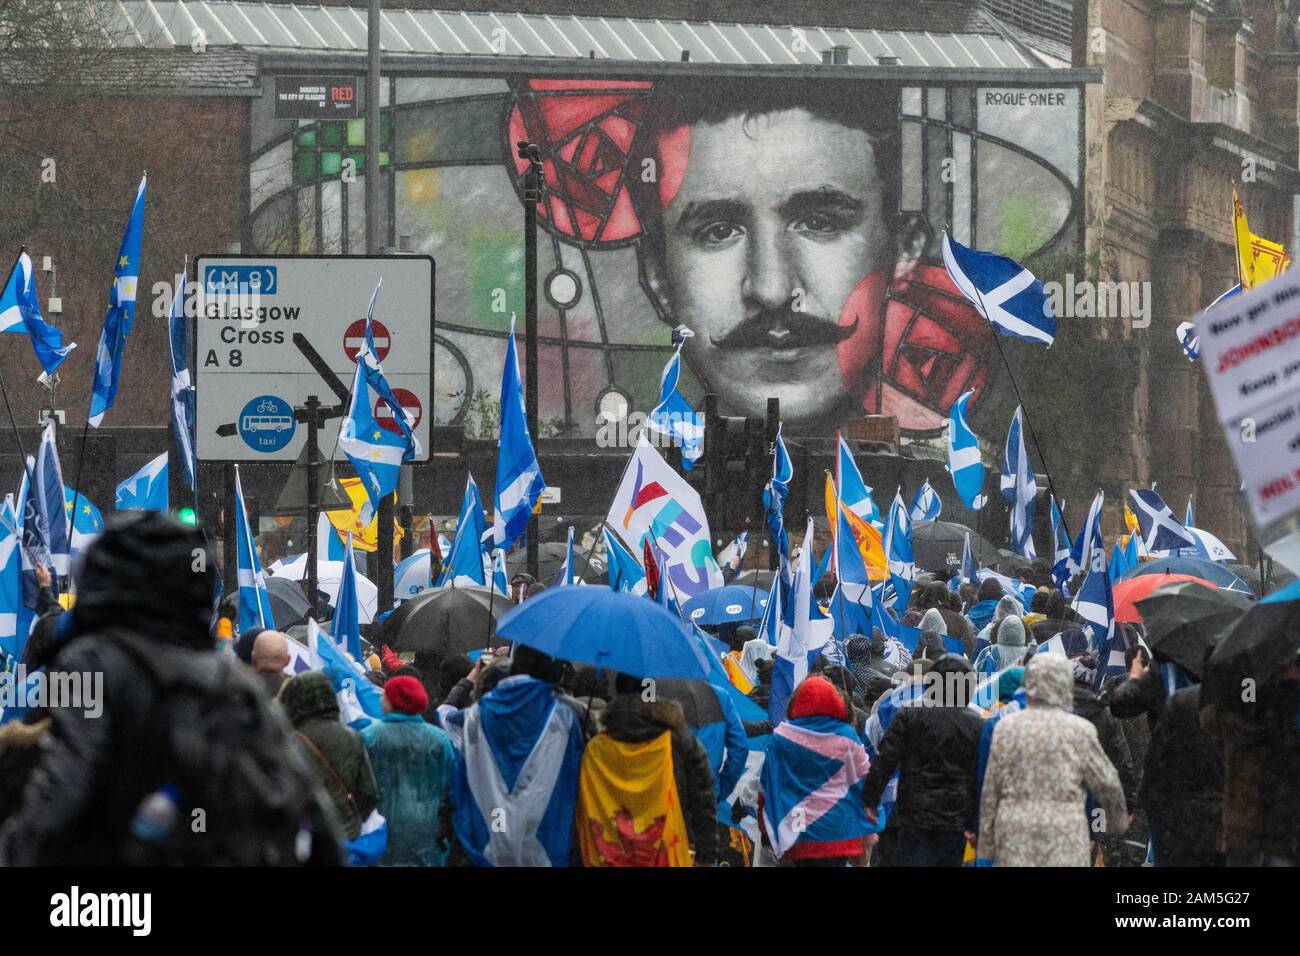 Glasgow, Scozia, Regno Unito - 11 gennaio 2020: Migliaia di sostenitori dell'indipendenza marciano per le strade di Glasgow nonostante la pioggia battente, qui passando davanti a un murale gigante di Charles Rennie Mackintosh Foto Stock